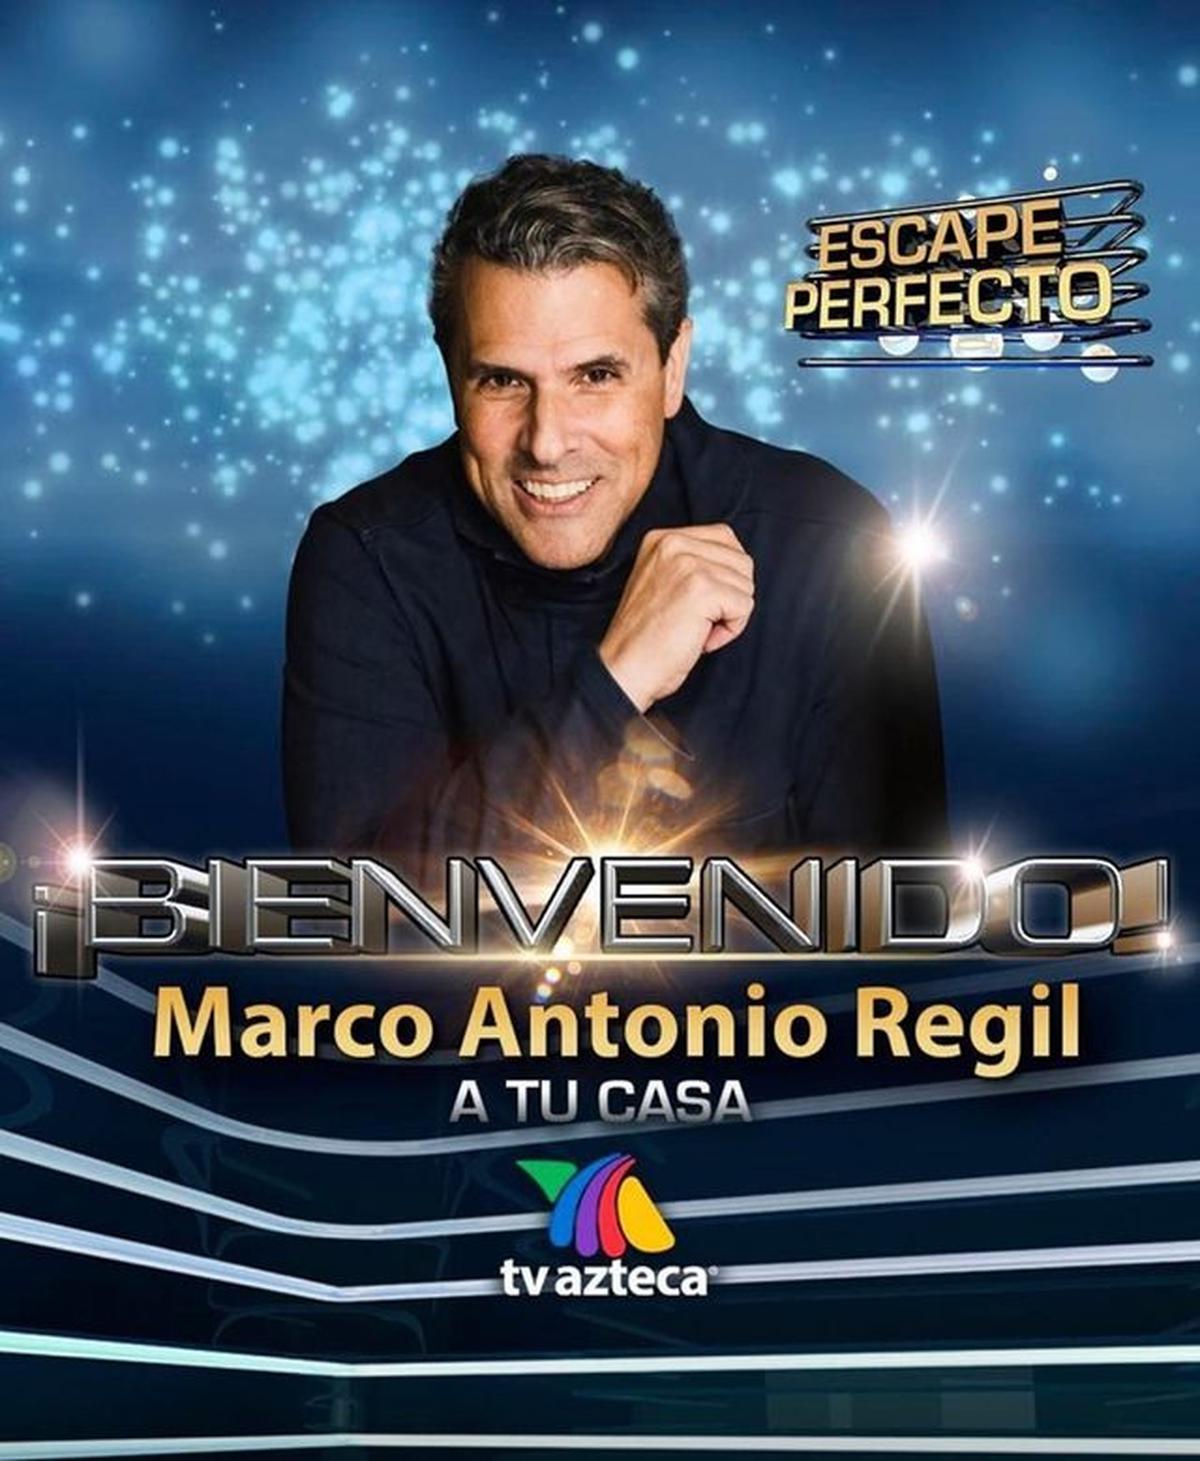  | Marco Antonio Regil llegará a TV Azteca